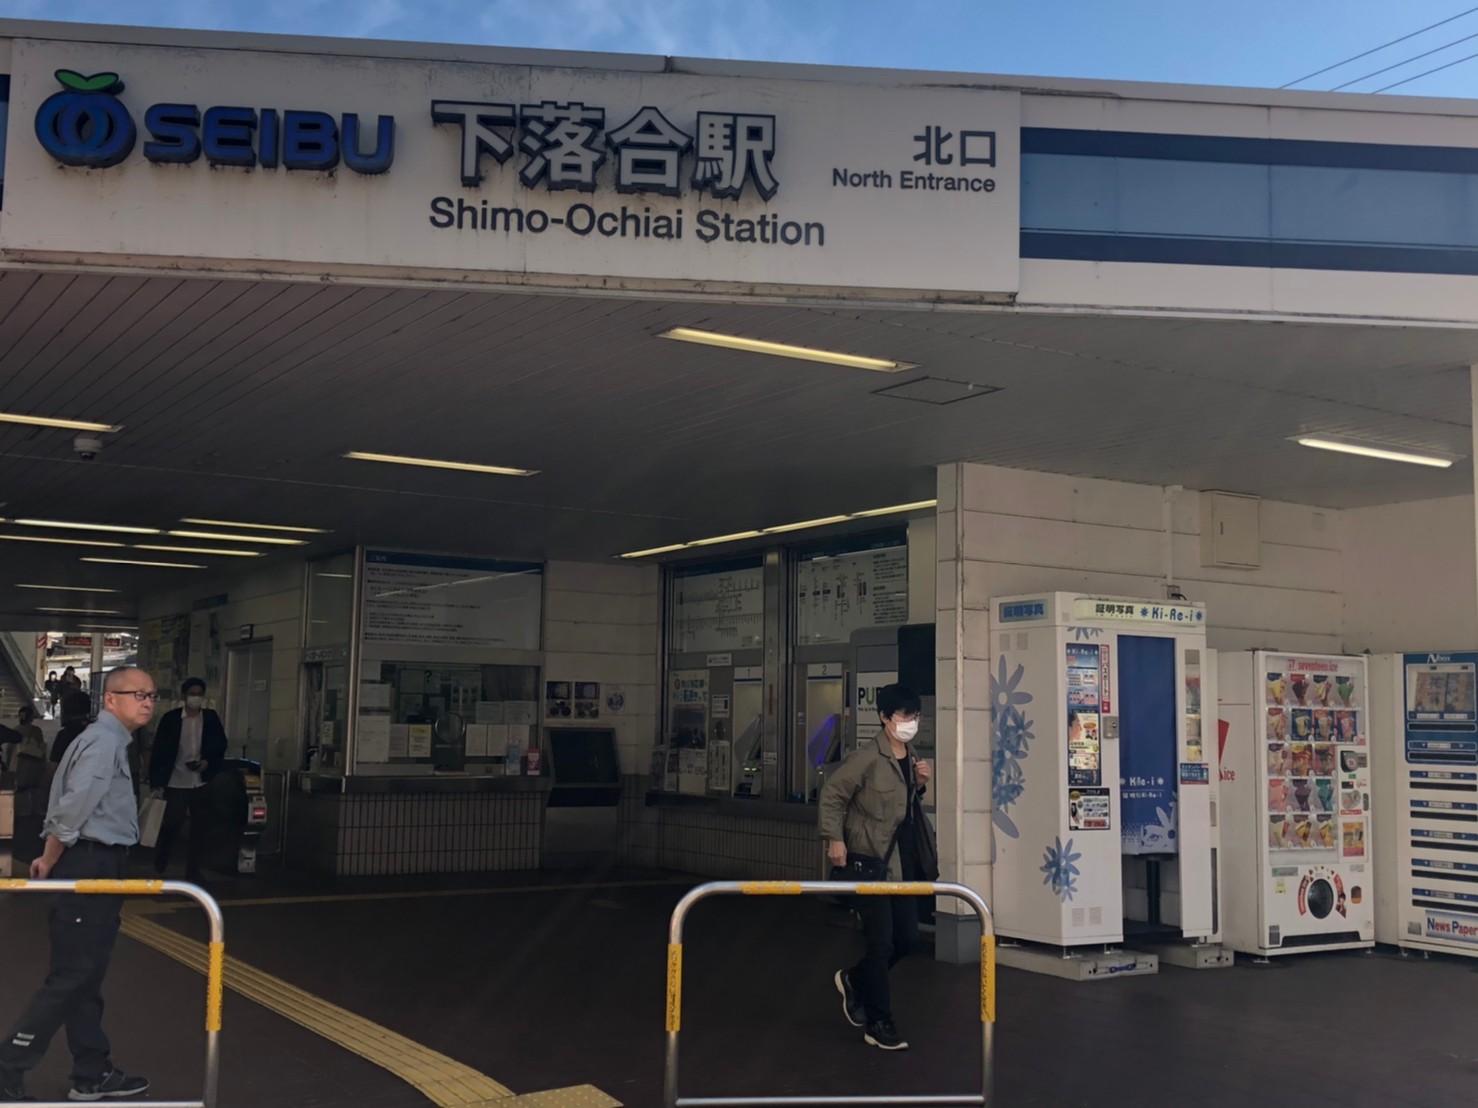 Seibu Shinjuku line Shimoochiai station☆Belle Ville Shimo Ochiai☆